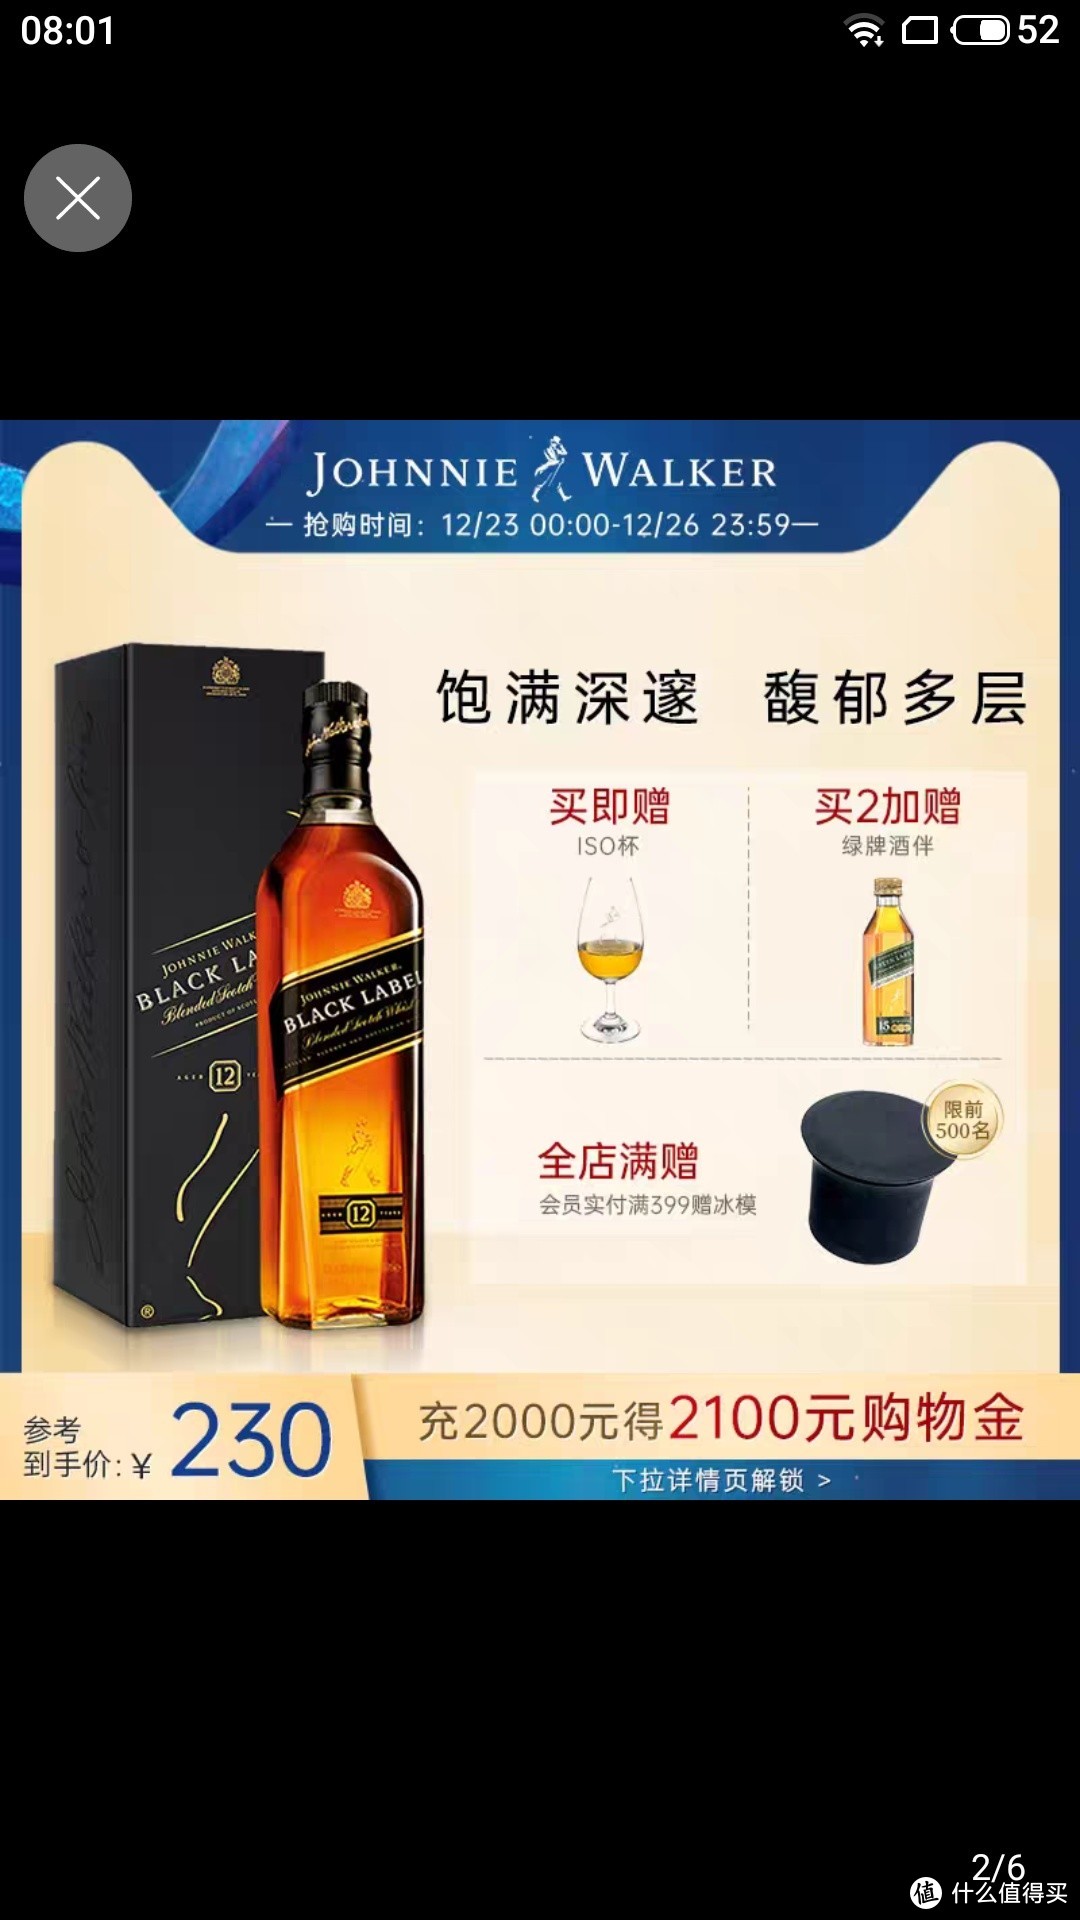 【官方旗舰店】 尊尼获加黑牌黑方苏格兰威士忌700ml单瓶进口洋酒